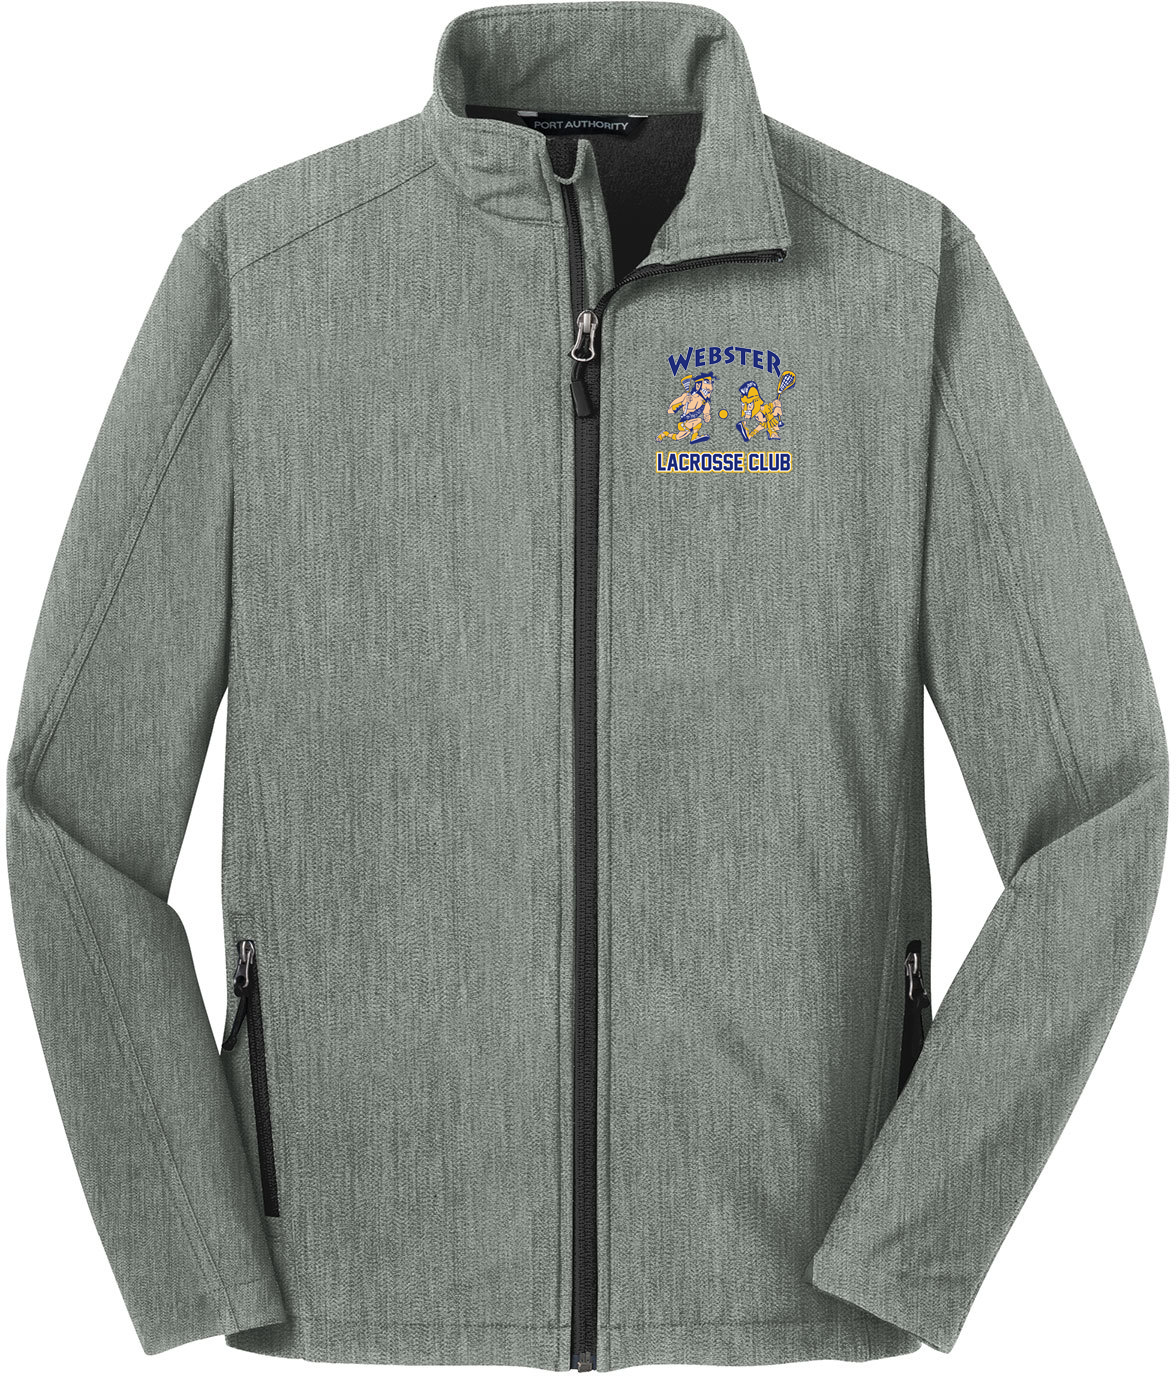 Webster Lacrosse Light Grey Soft Shell Jacket